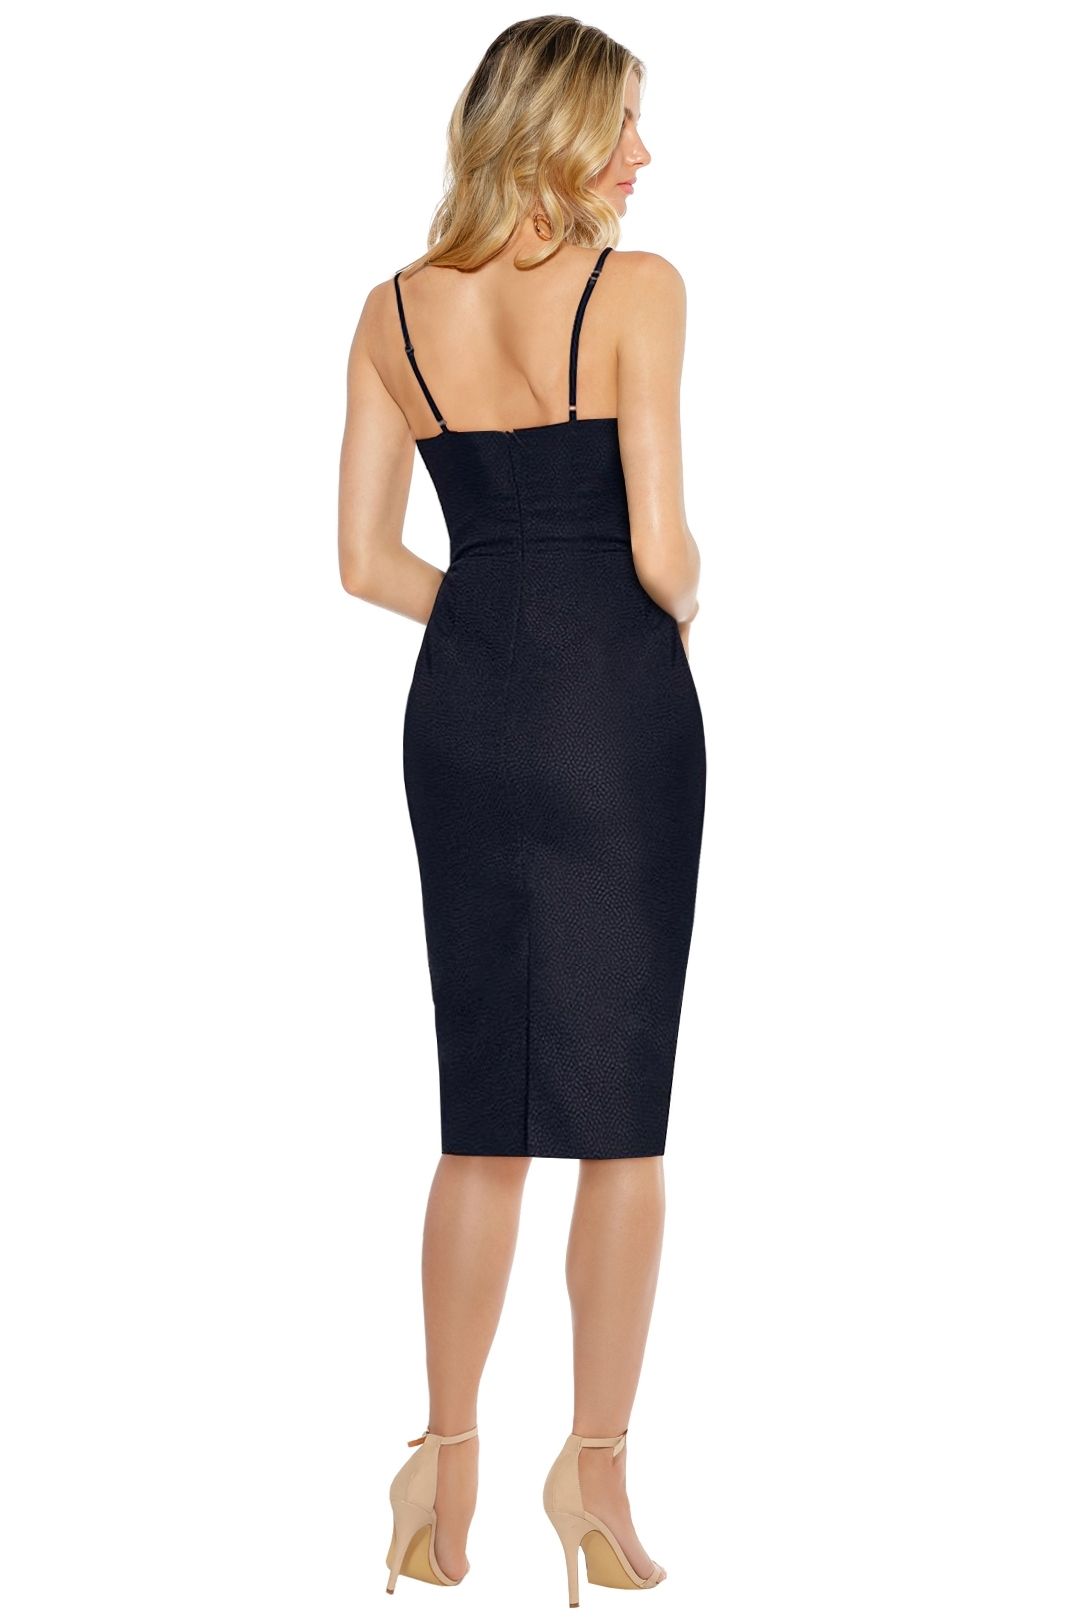 Misha Collection - Felicienne Dress - Black - Back